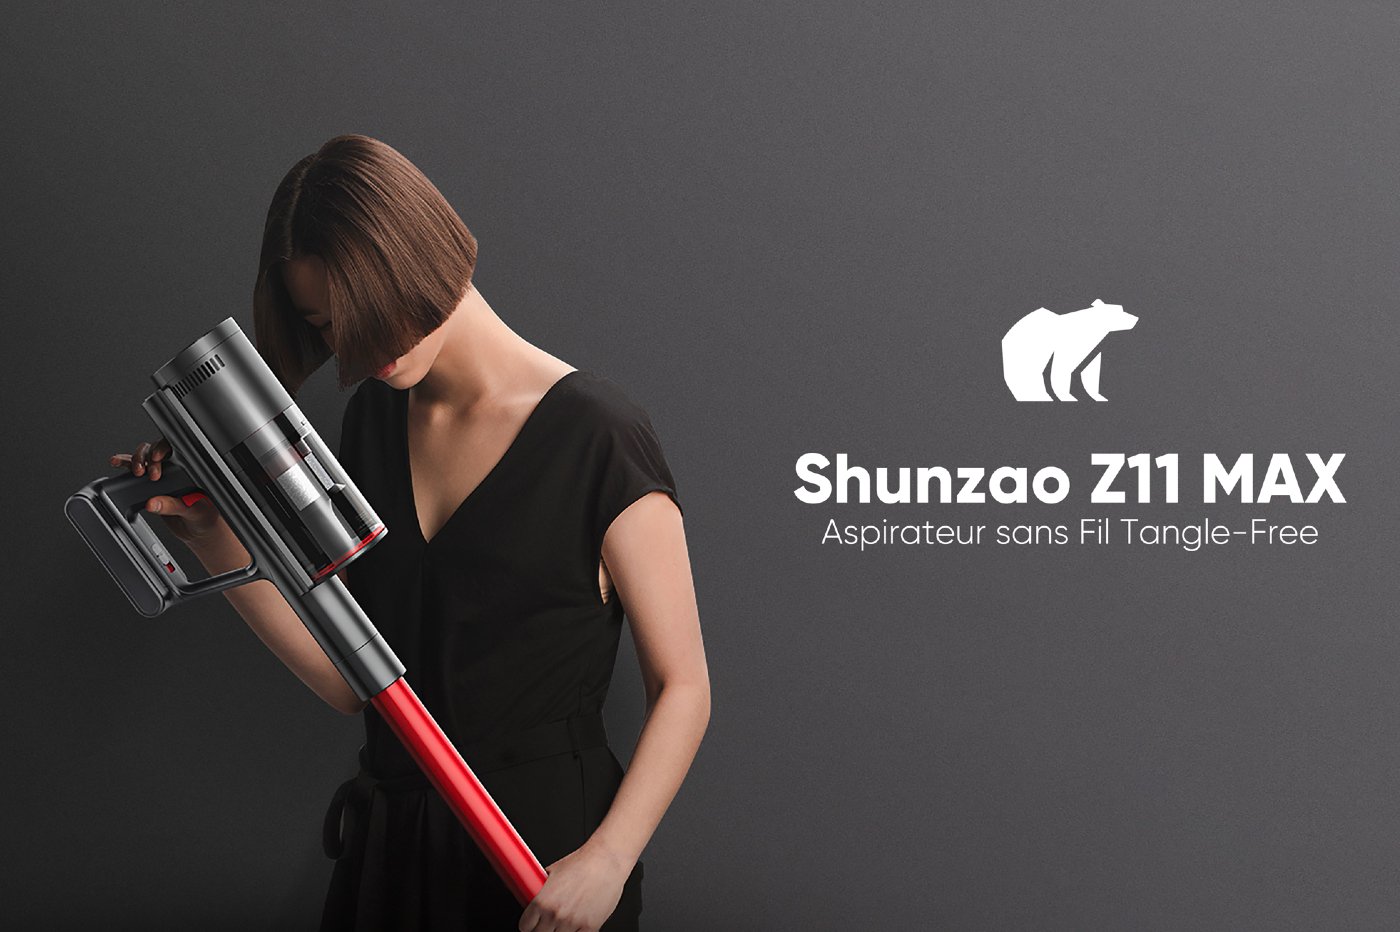 Le Shunzao Z11 Max est actuellement en promotion chez Amazon.